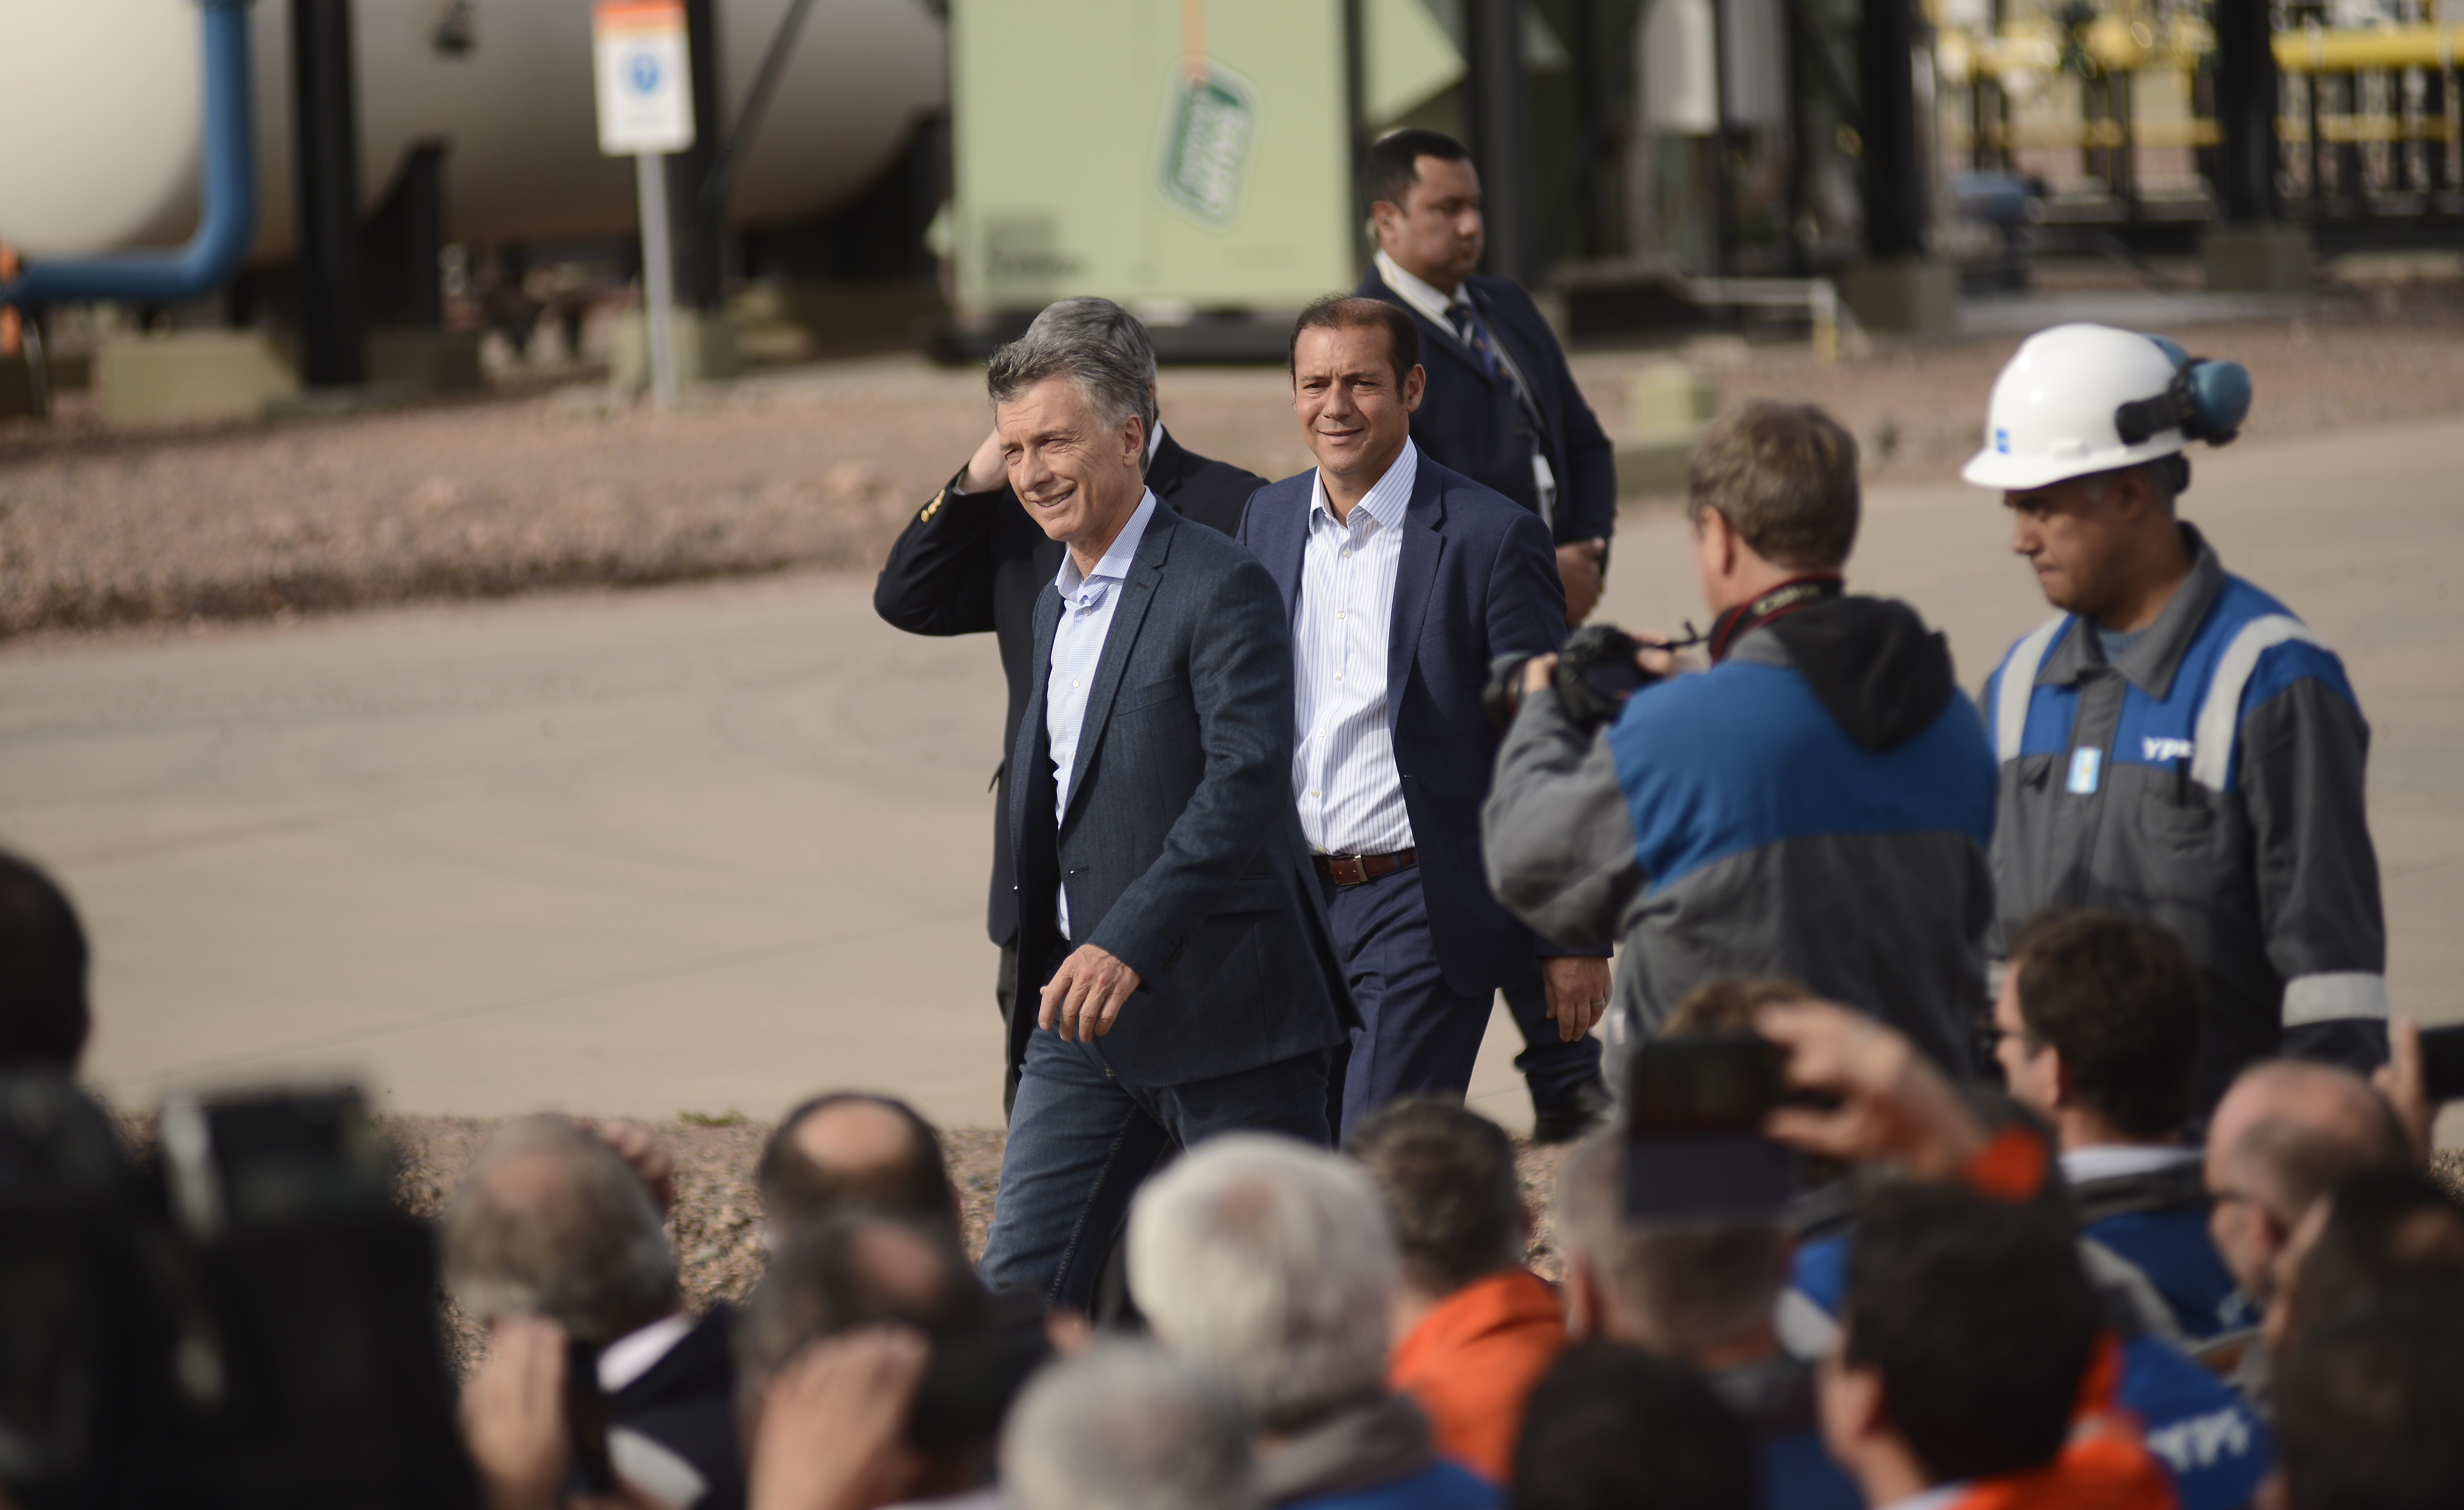 El jefe de Estado visitó Neuquén la semana pasada para la inauguración de un oleoducto. Foto: Mauro Pérez